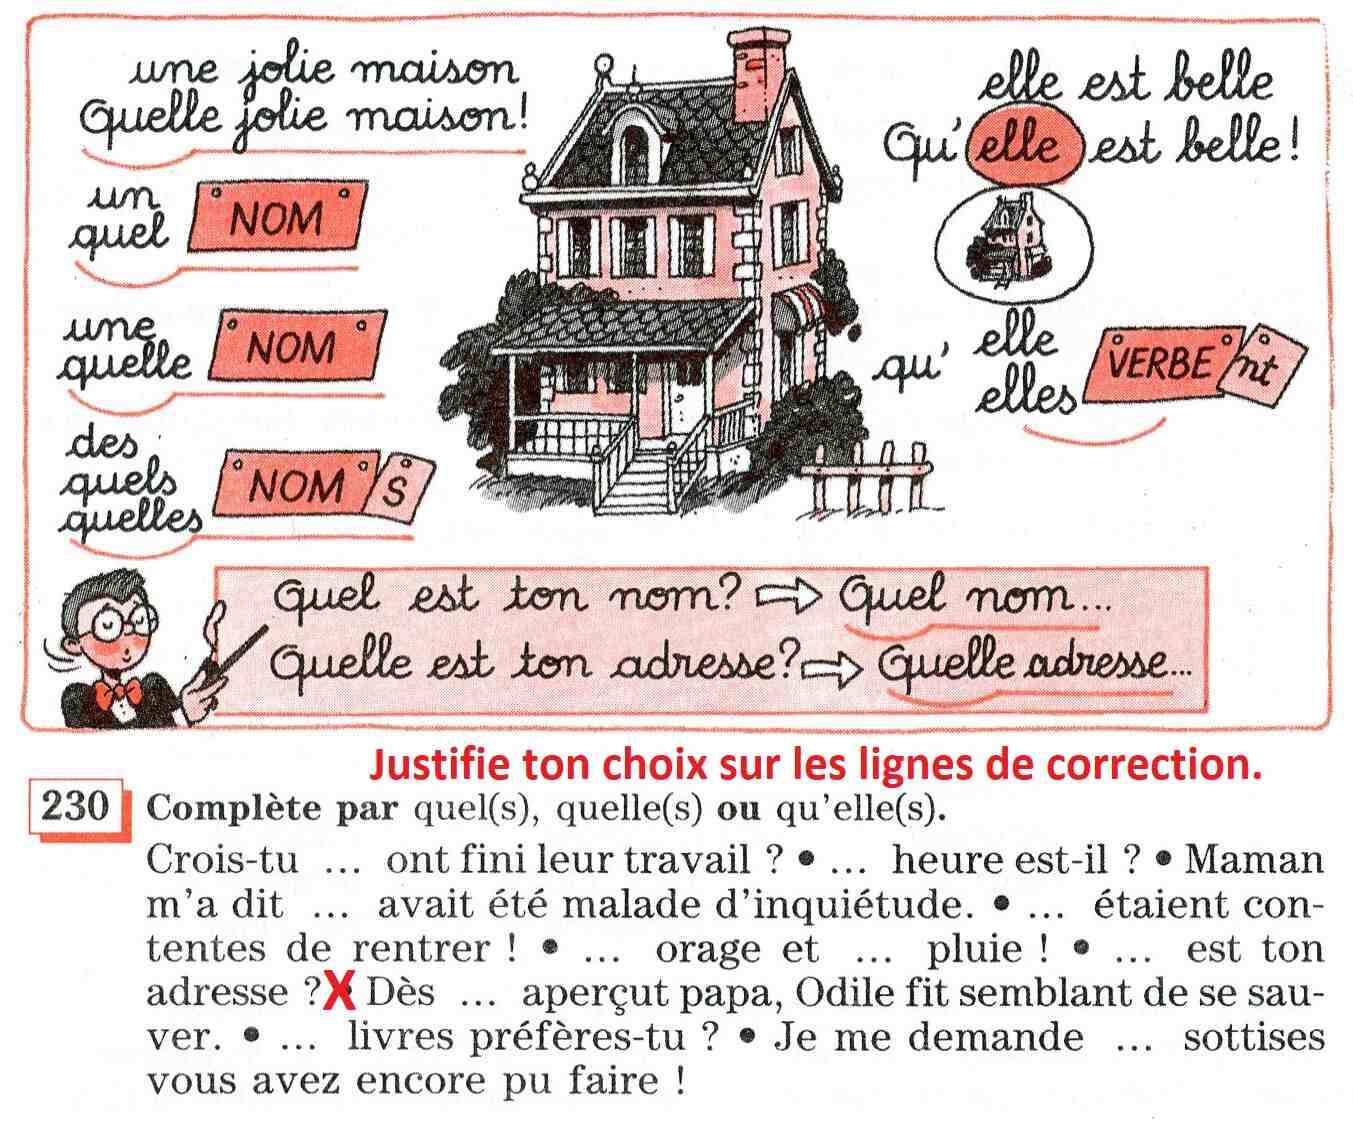 Lequel quel quel quel français est facile?